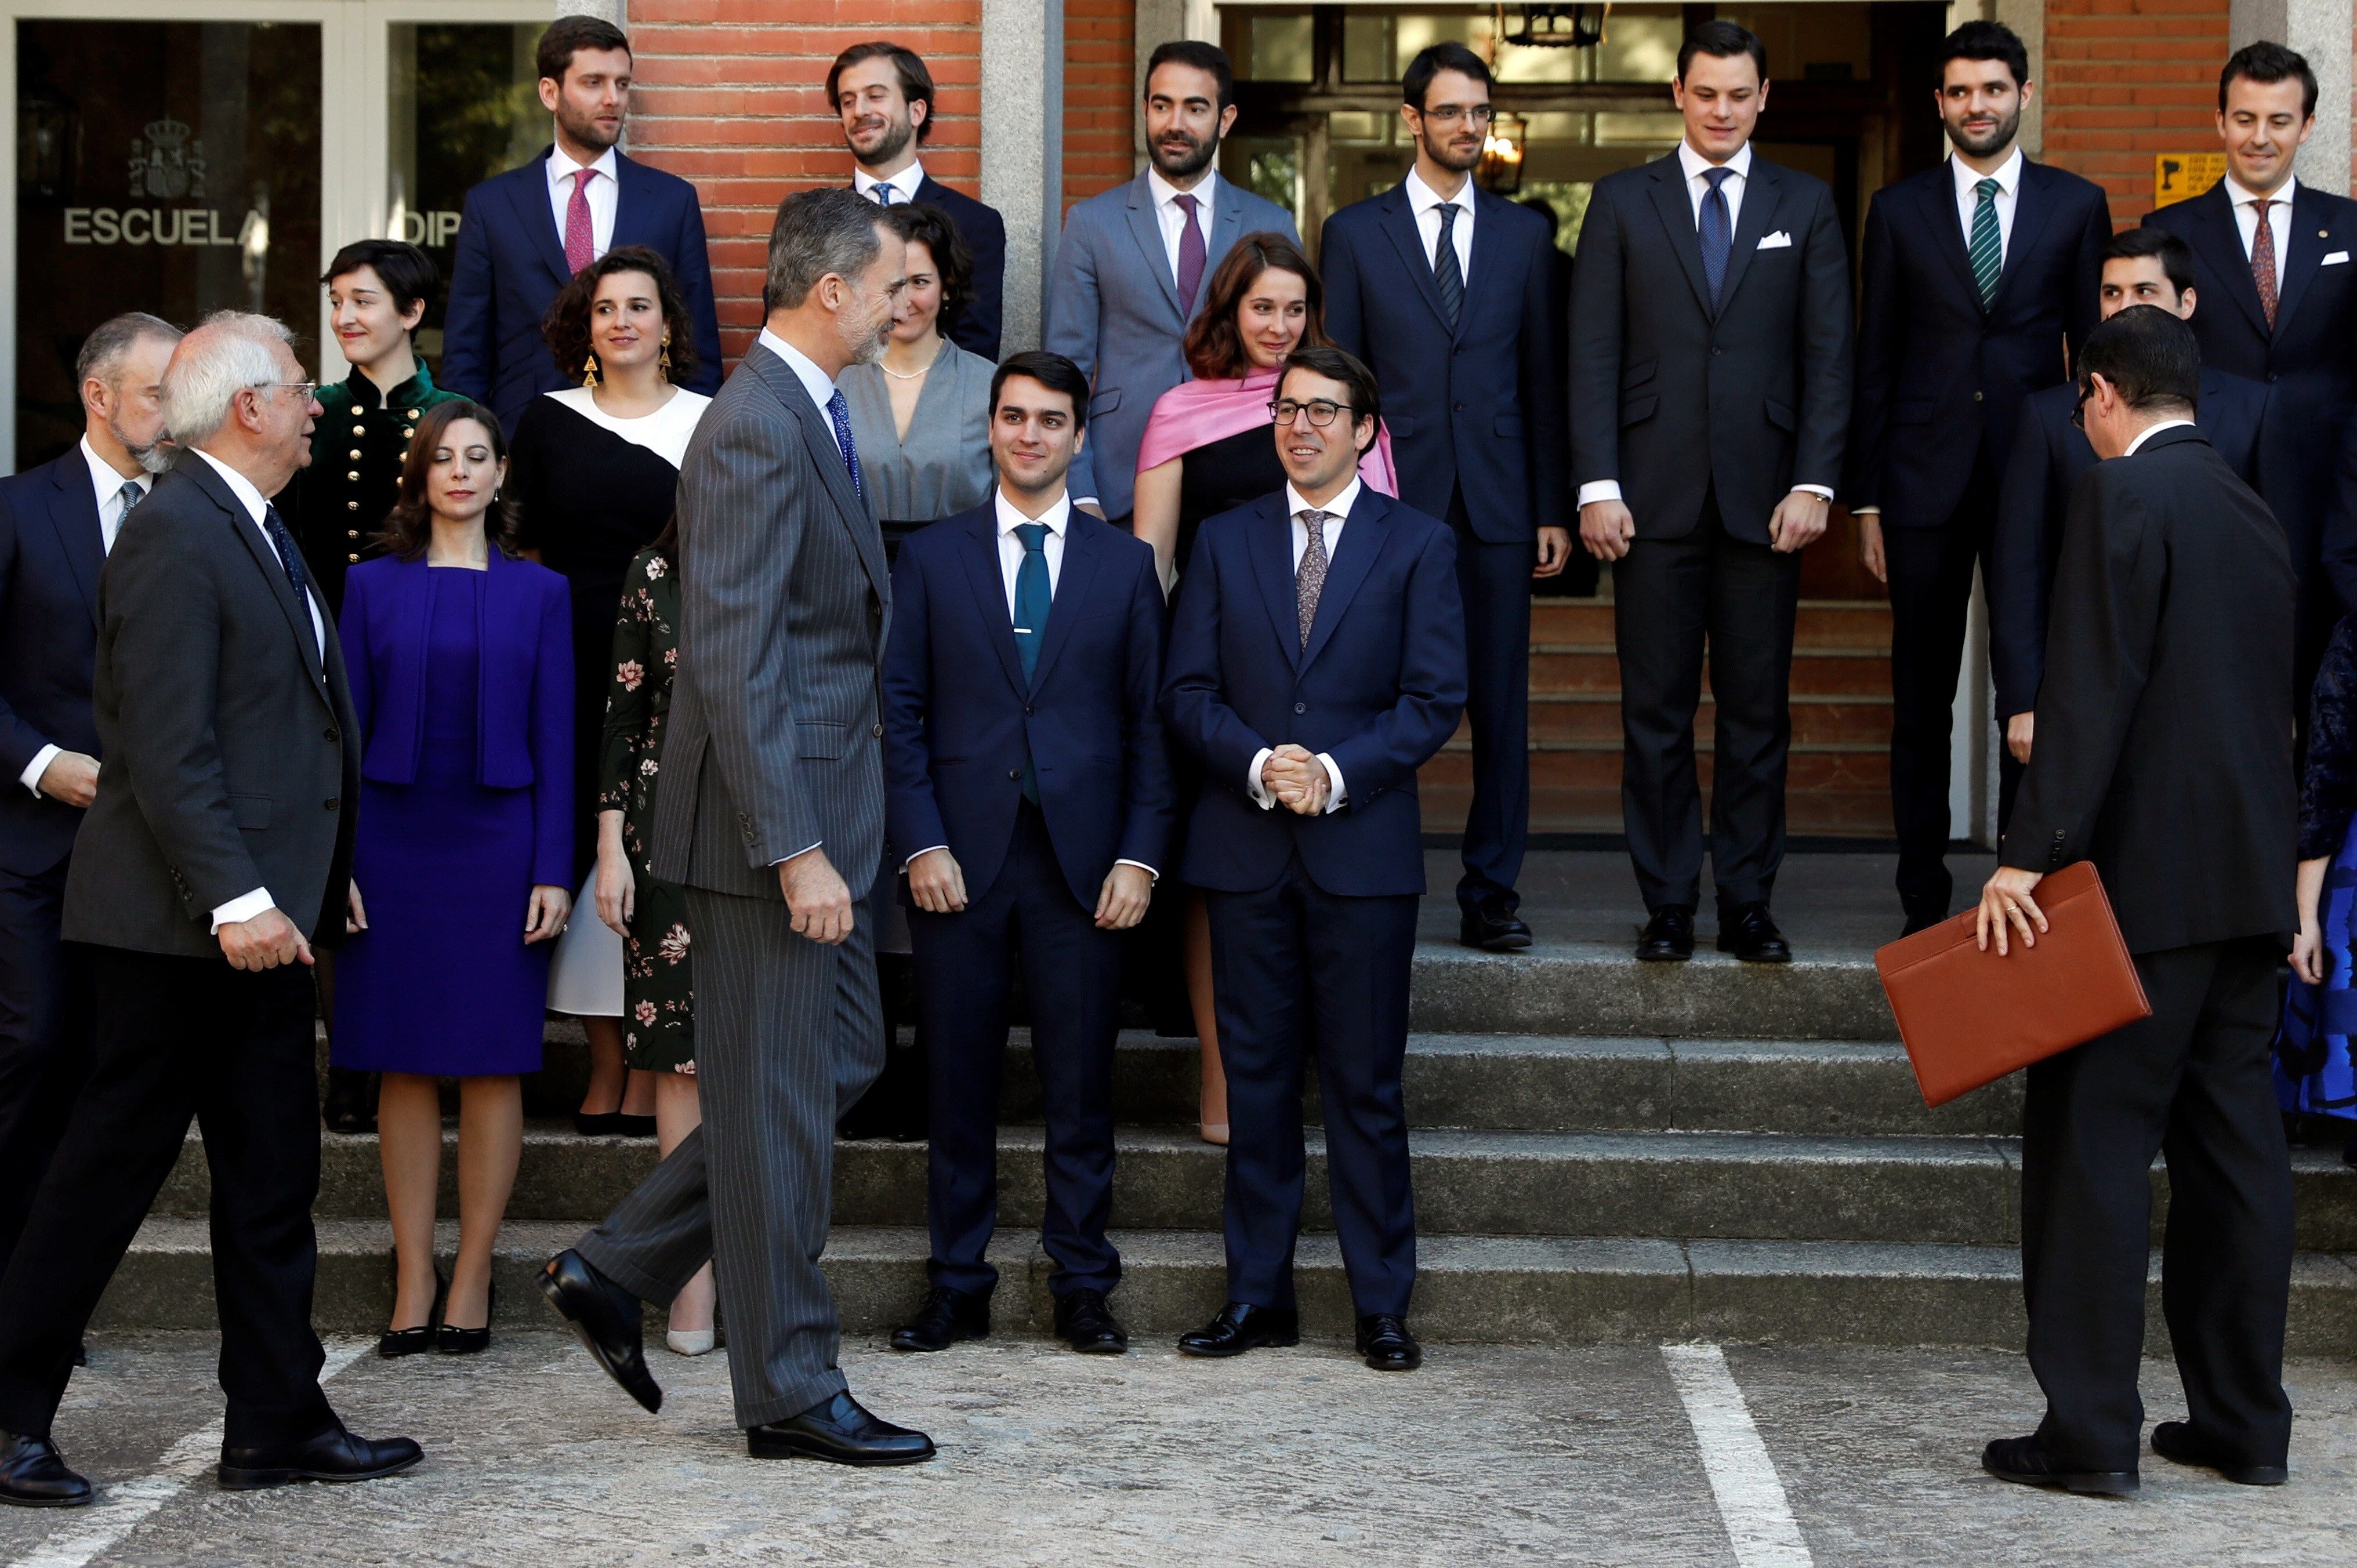 Felip VI insta els nous diplomàtics a difondre la "imatge autèntica" d'Espanya